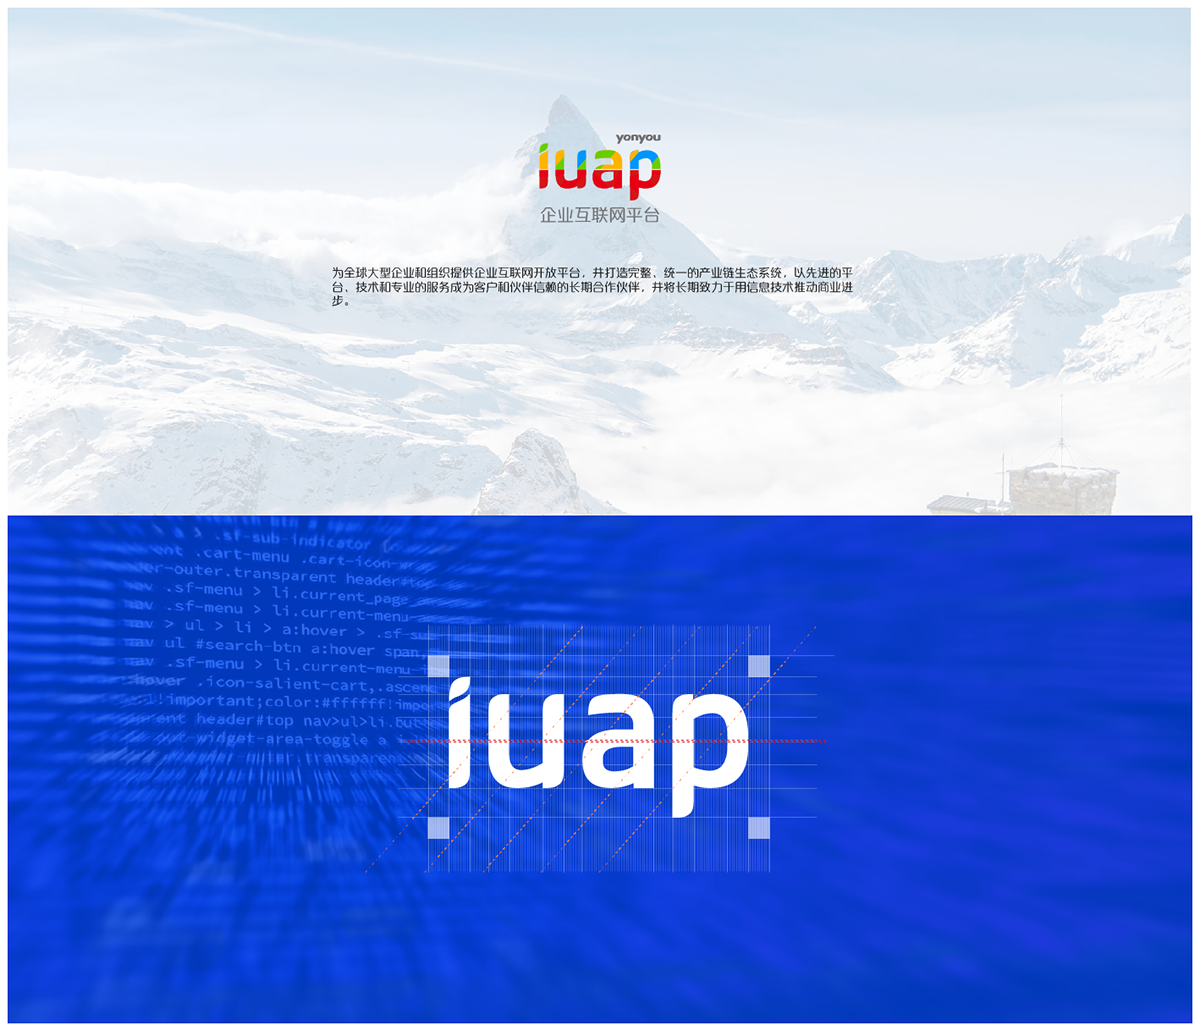 iuap brand logo 品牌 标志 用友